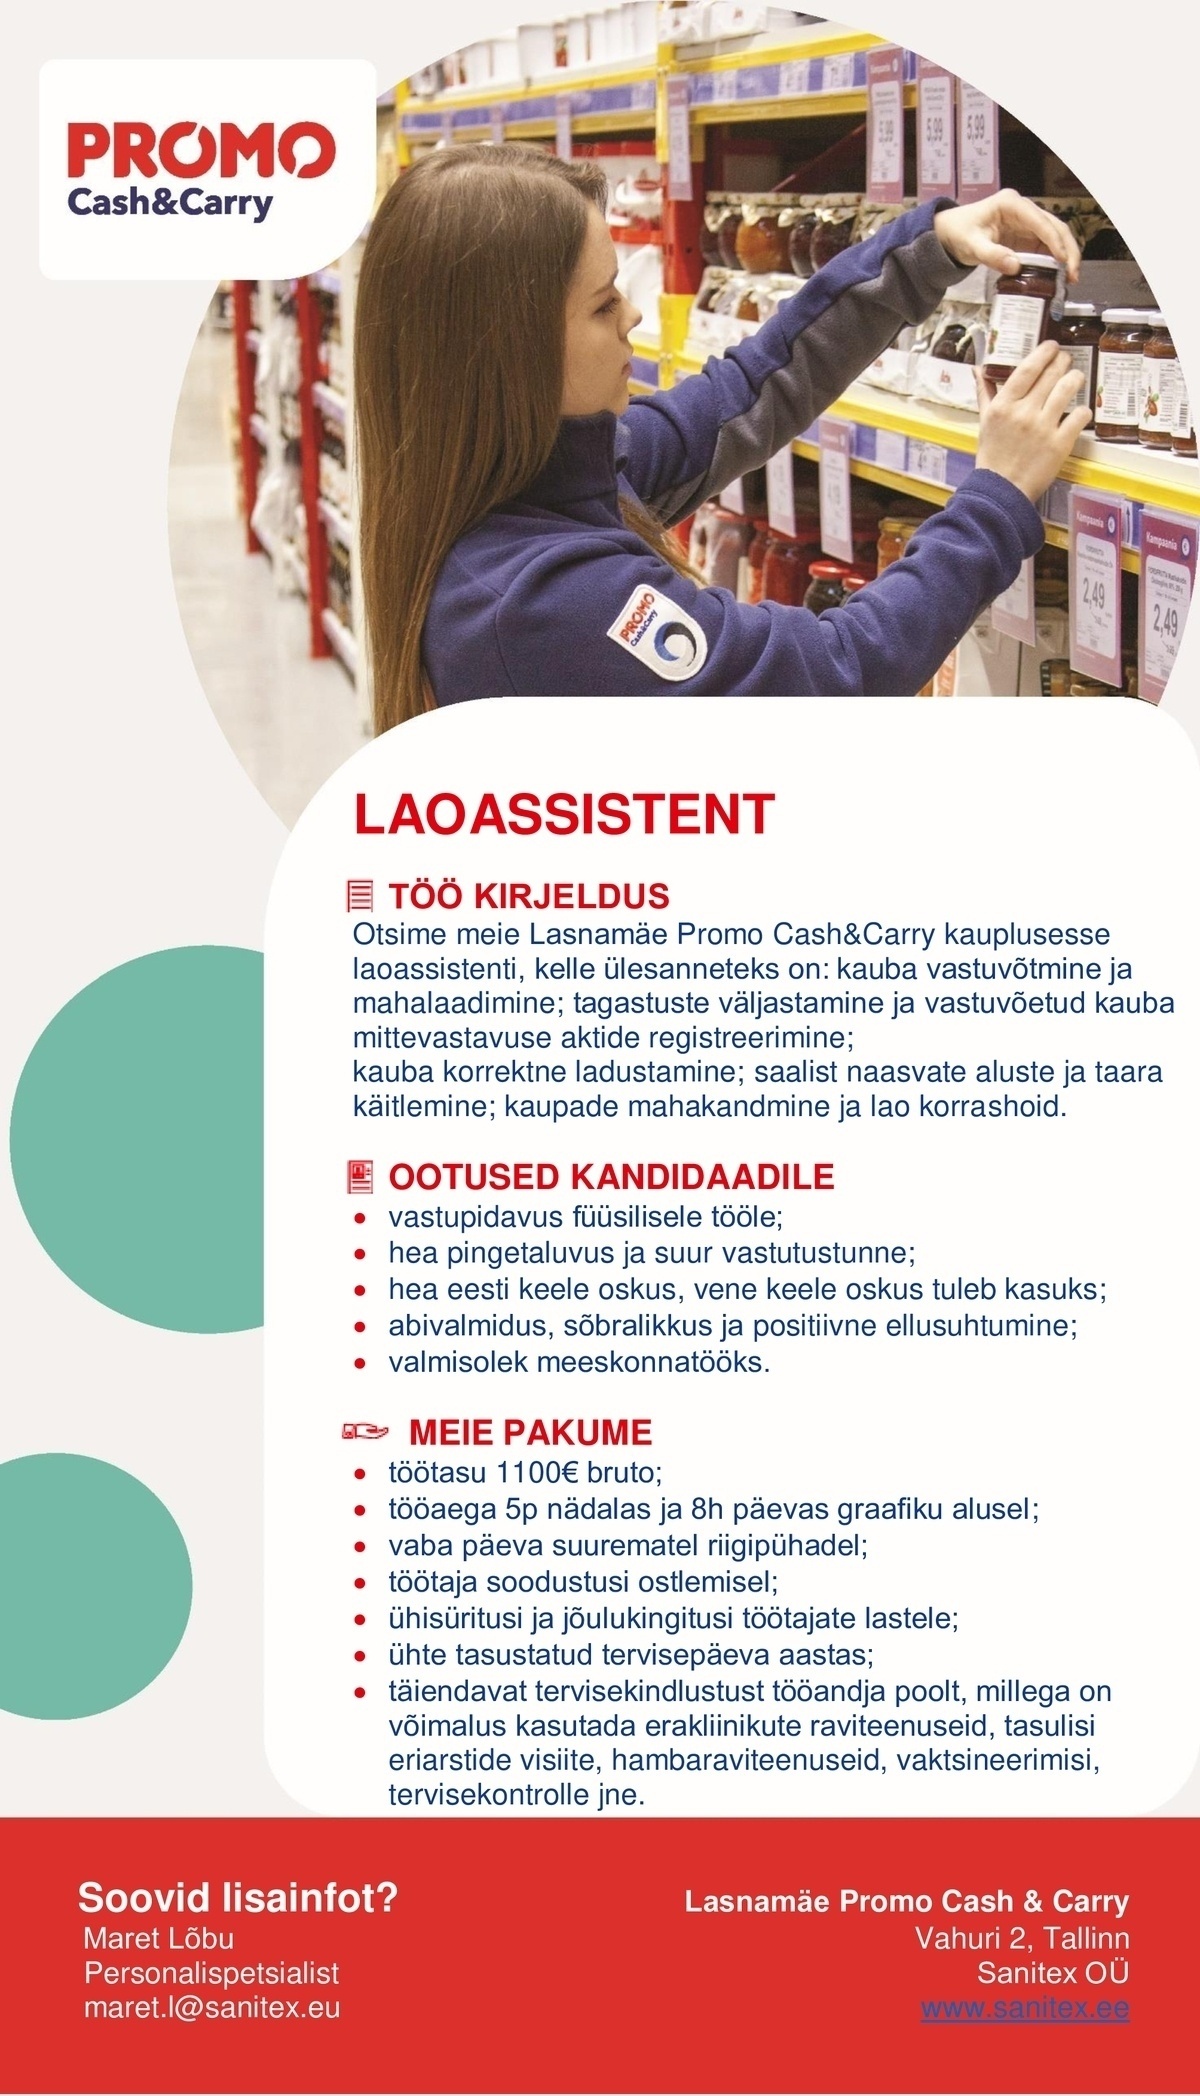 Sanitex OÜ Laoassistent Lasnamäe Promo Cash&Carry hulgikaupluses